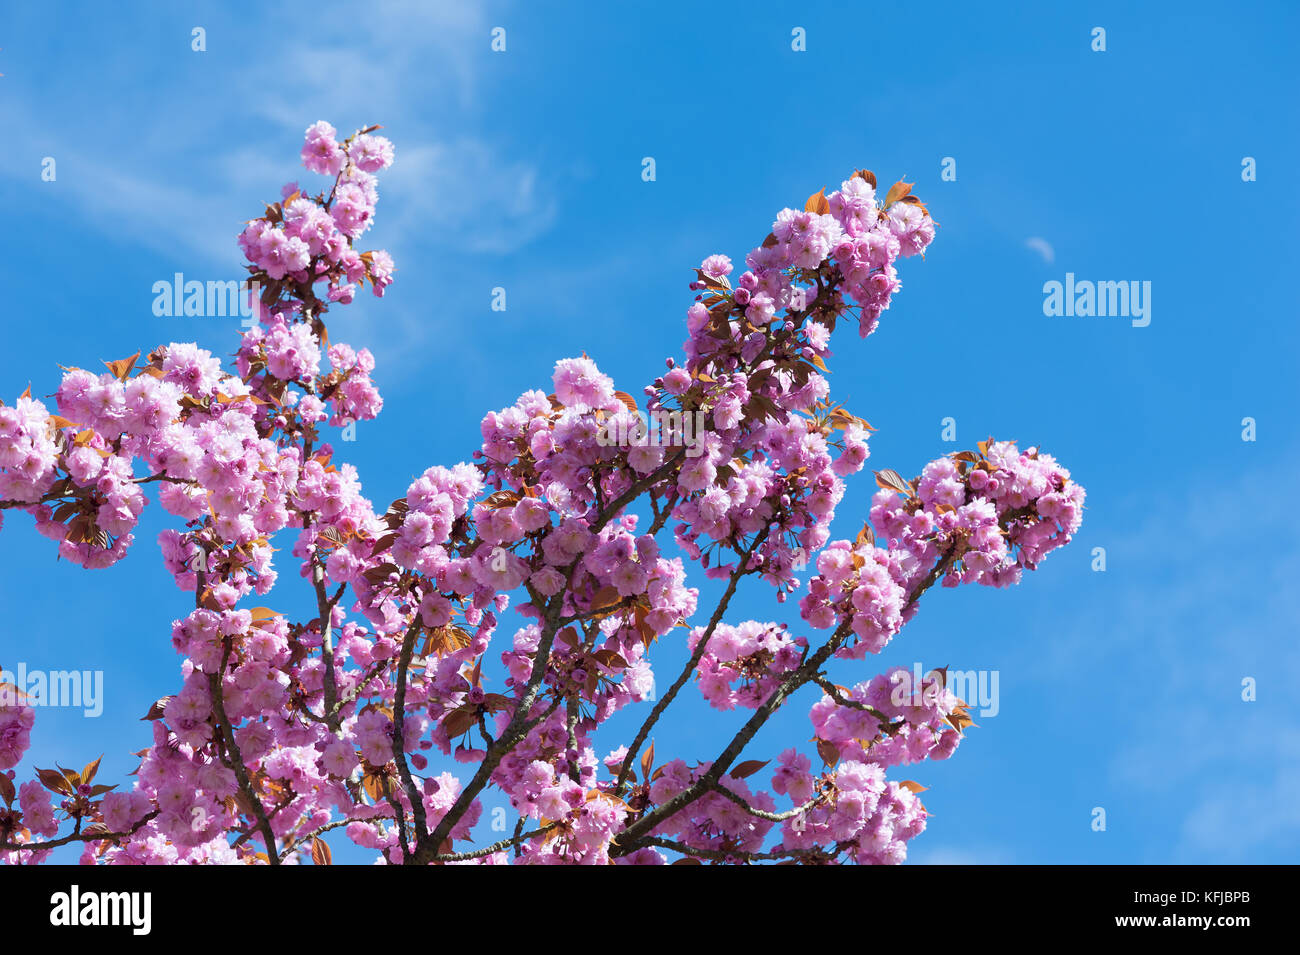 Flowering cherries in full bloom  Stock Photo